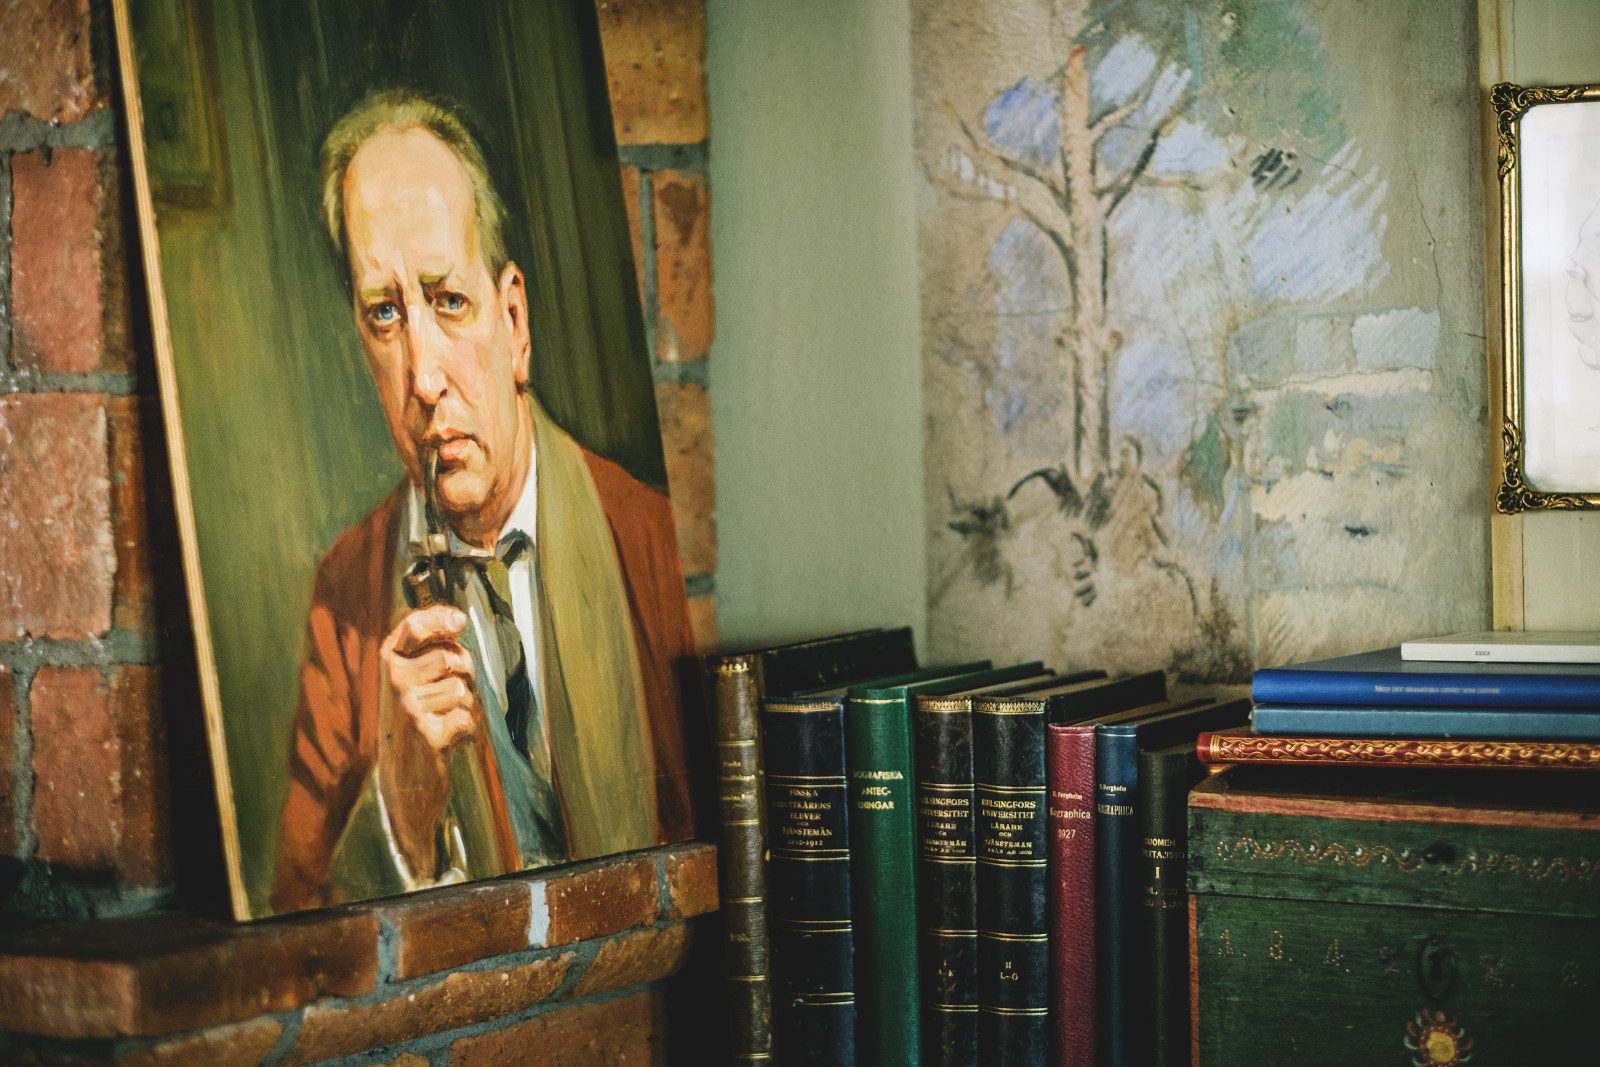 Casa Haartmannin huoneen nurkka, jossa näkyy maalaus miehestä ja rivi monivärisiä kirjoja.